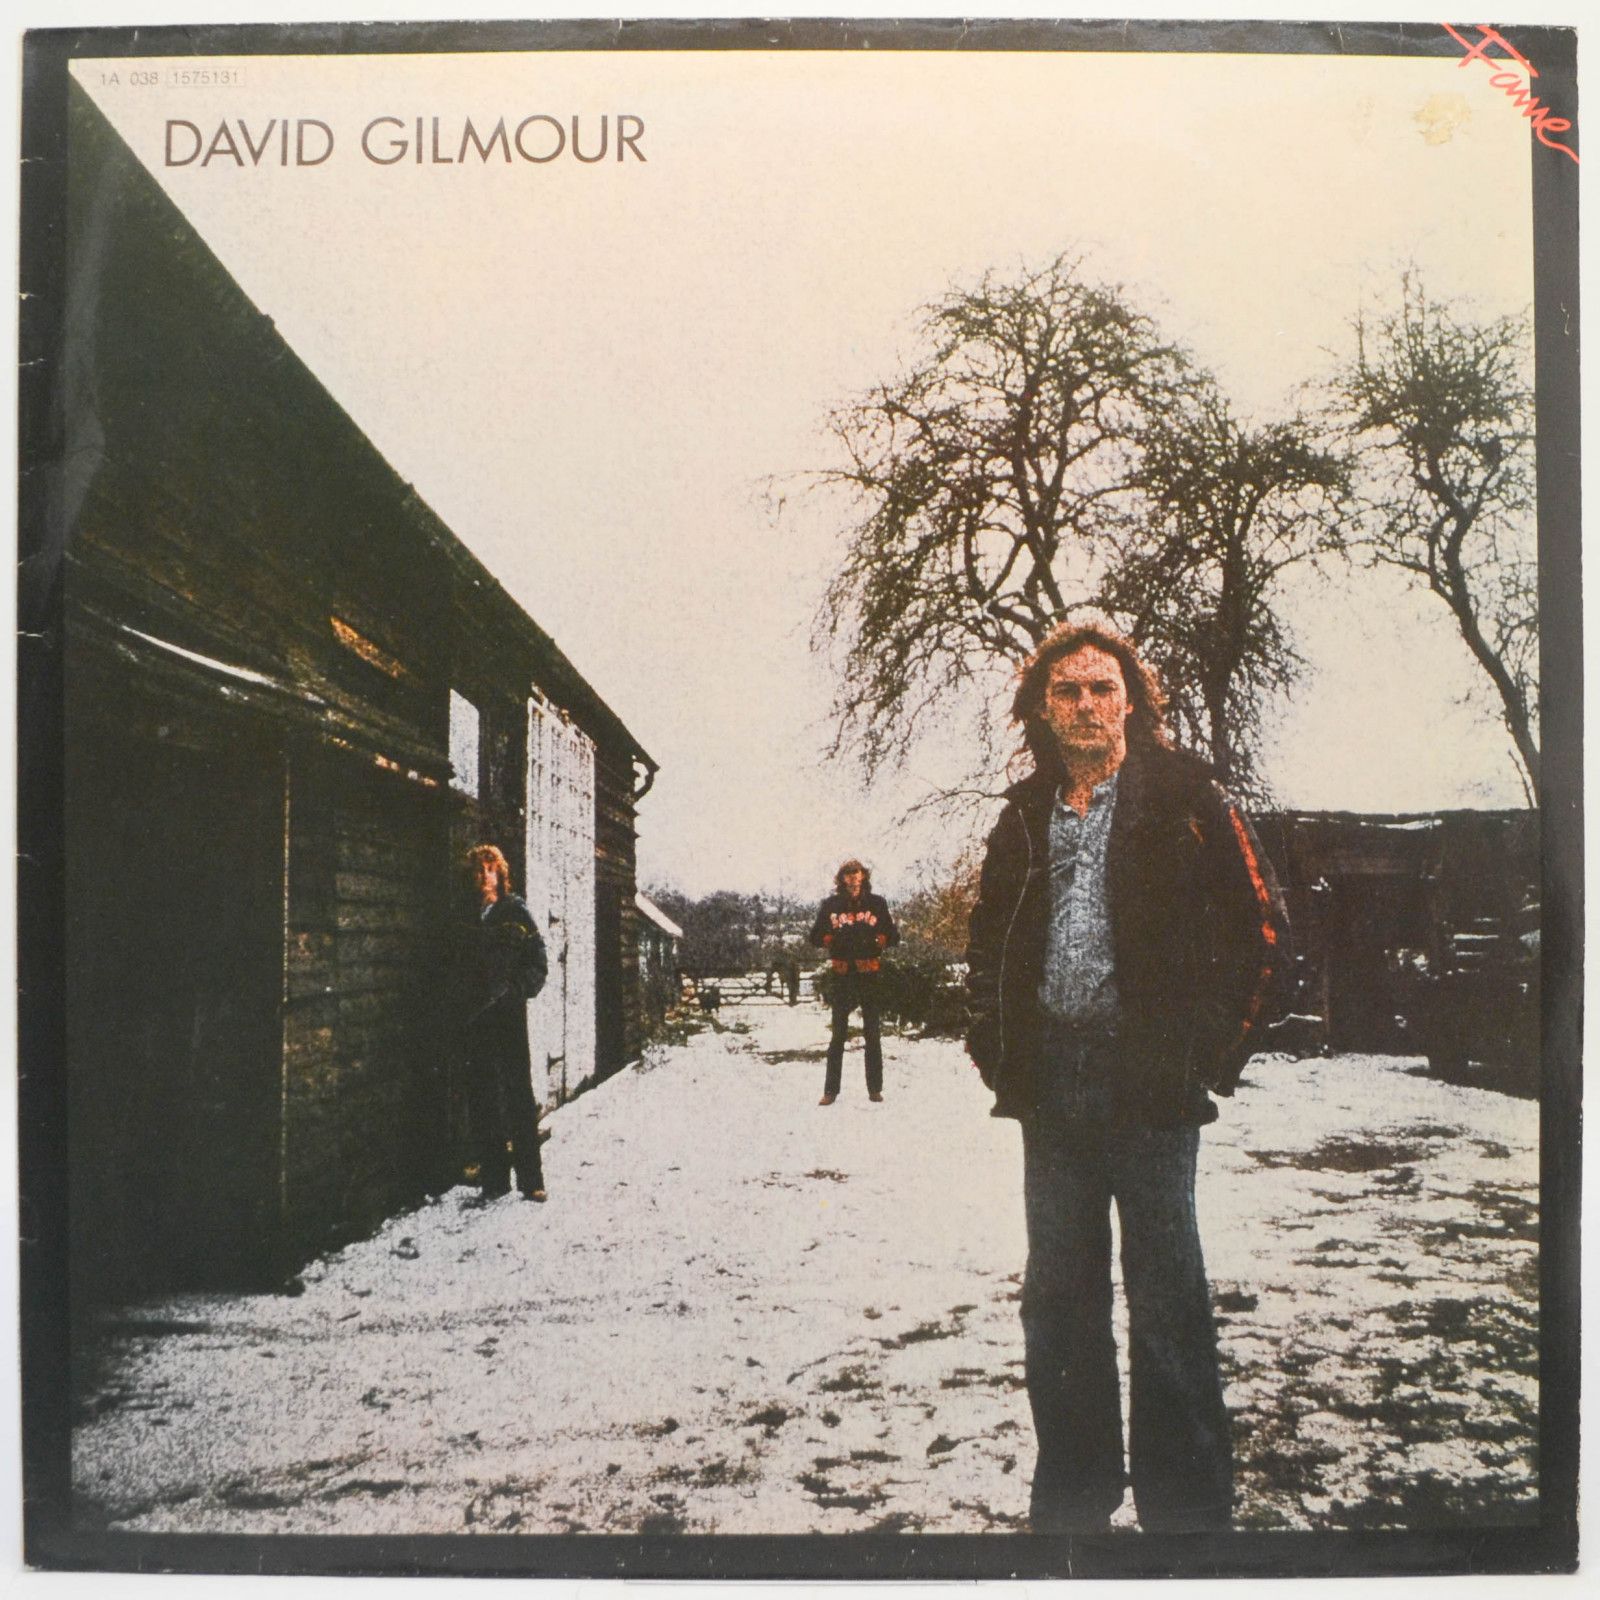 David Gilmour — David Gilmour, 1978